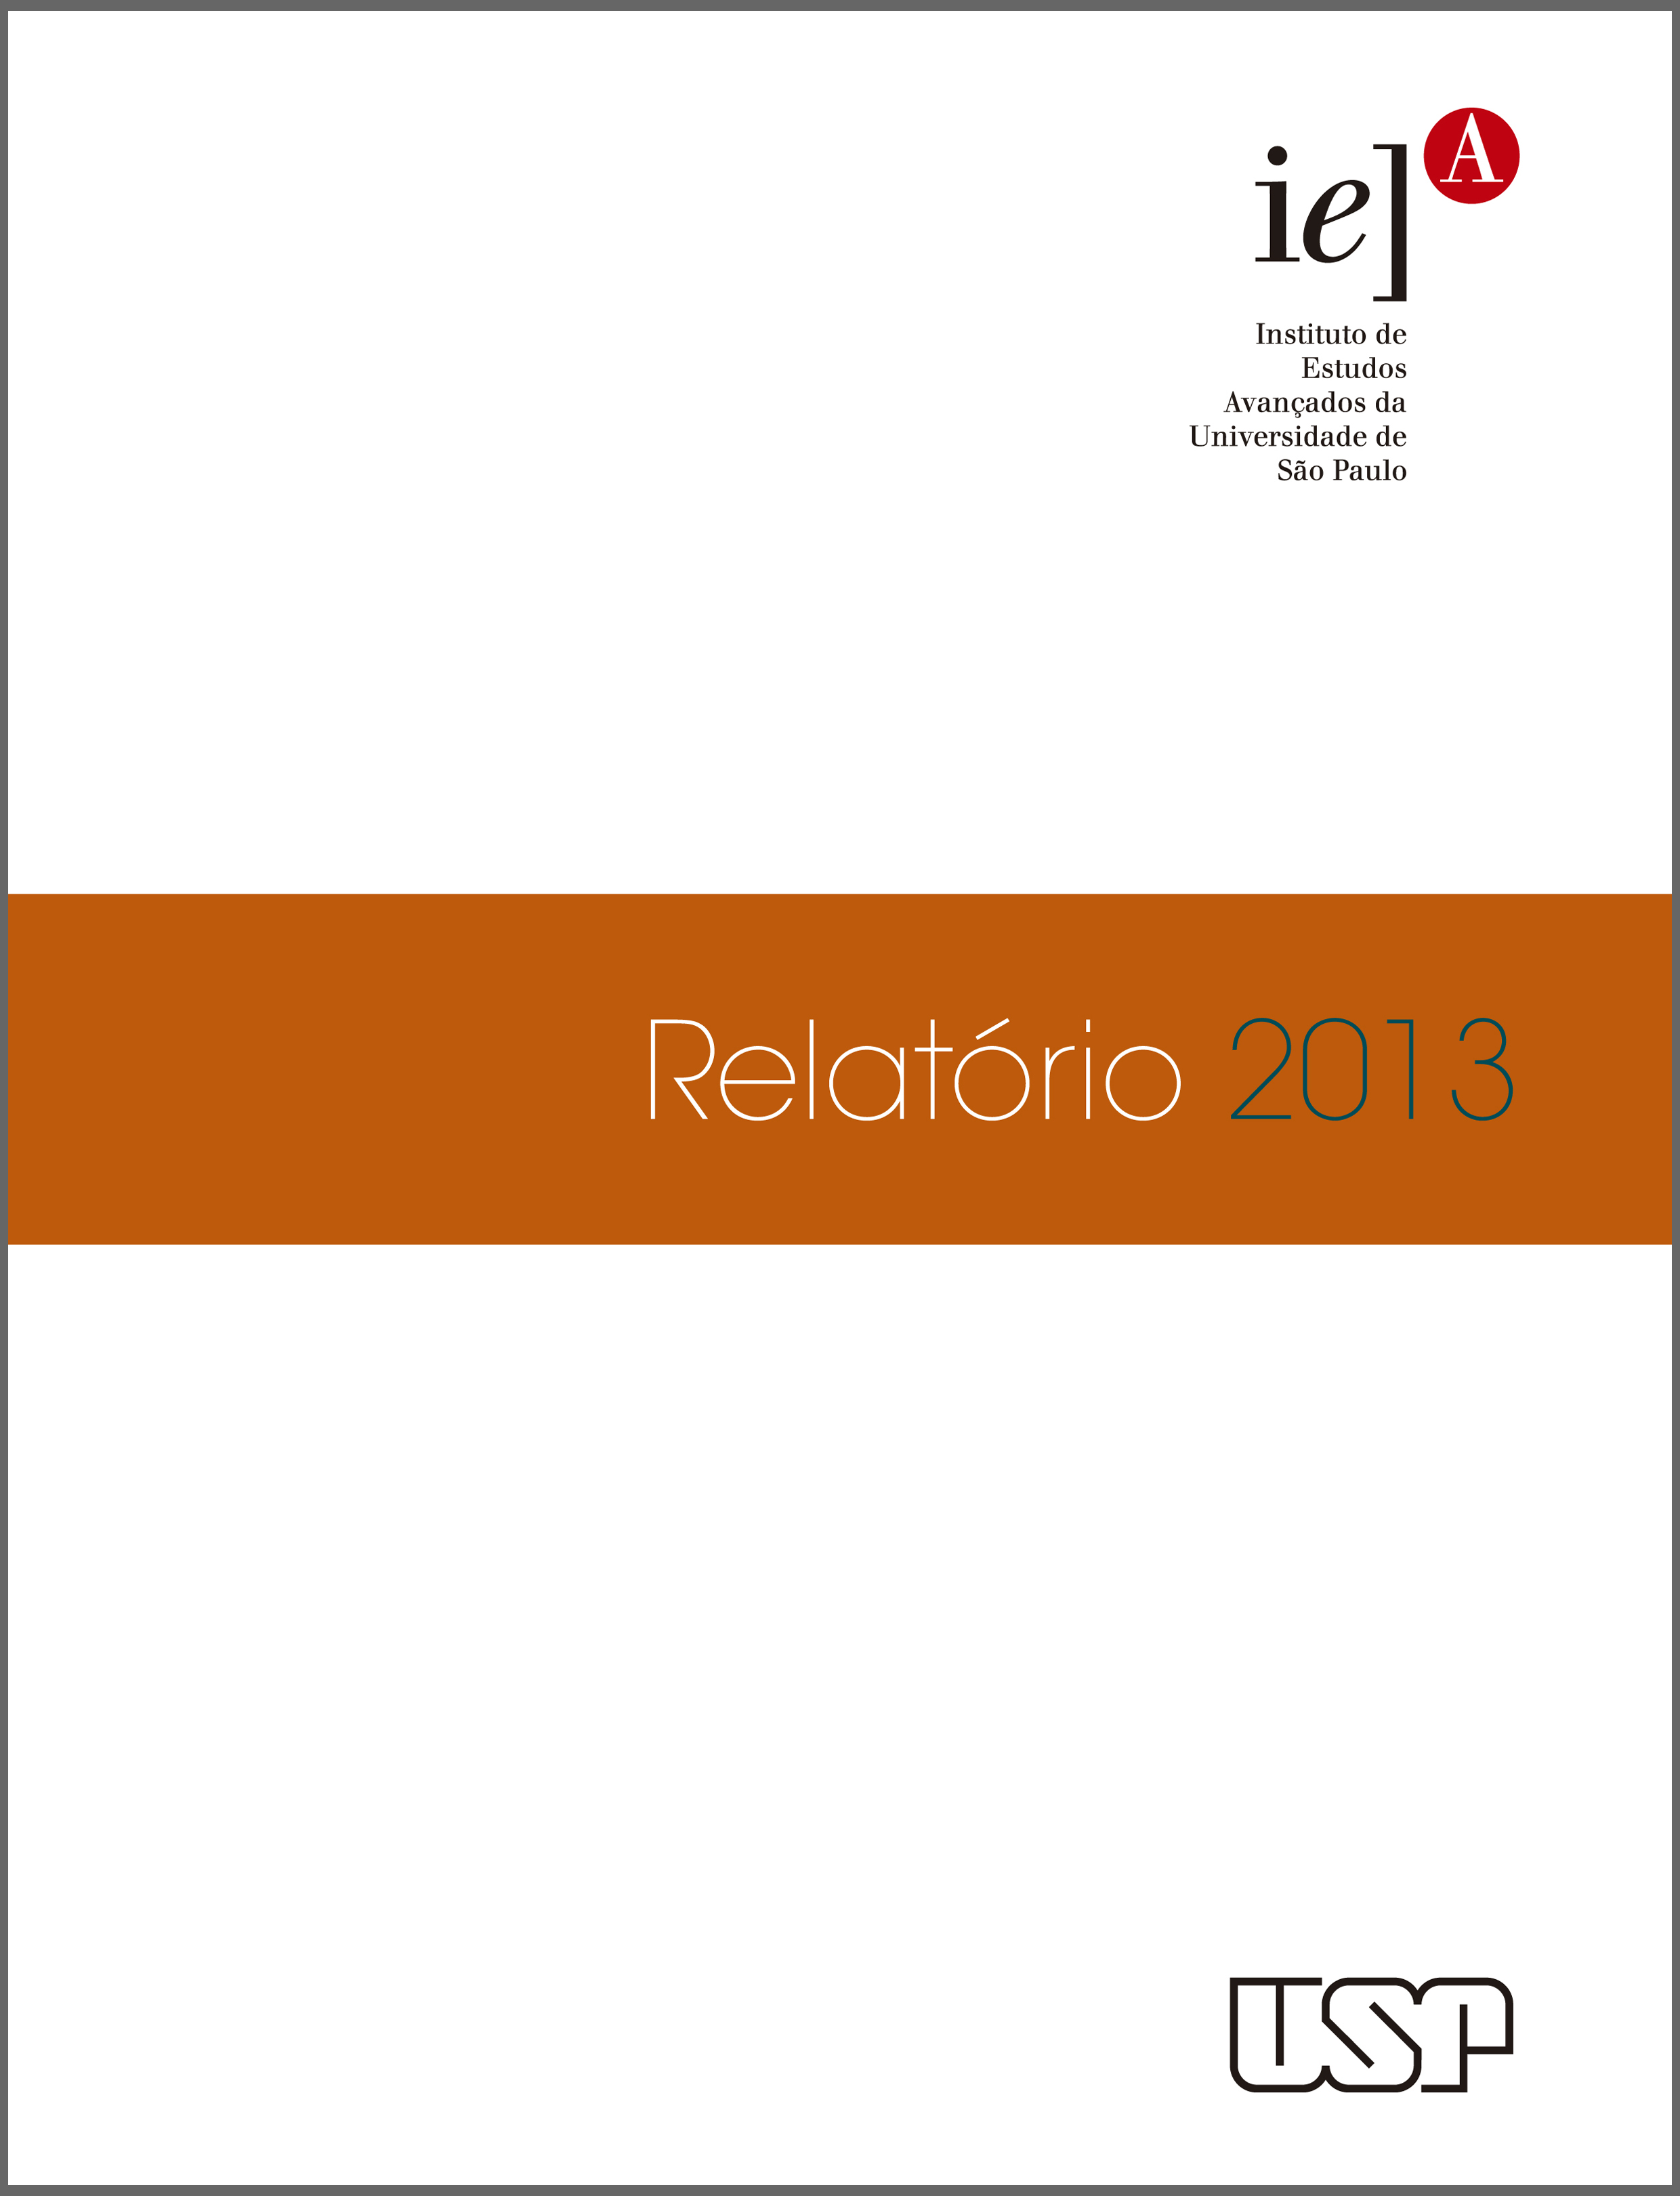 Relatório de Gestão 2013 - com borda